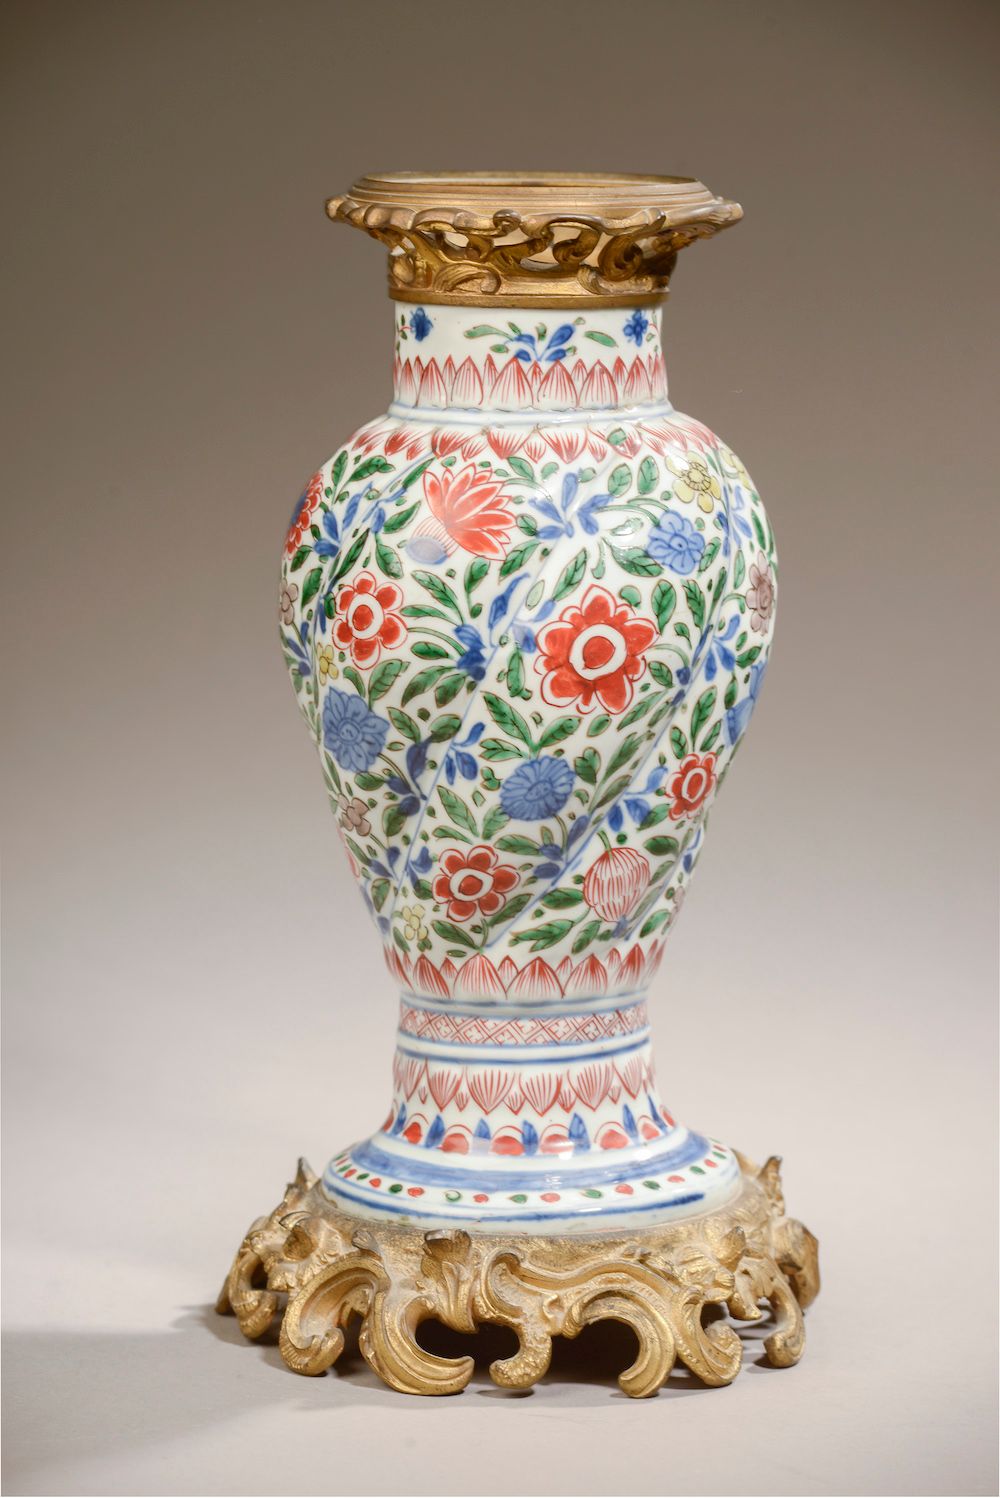 Null 中国 - 康熙年间（1662 - 1722）。

釉里红和绿族多色珐琅彩装饰的芭蕾舞曲瓷瓶（后装在青铜器上，装潢下的瓷器状况不保证）。

高度。25 &hellip;